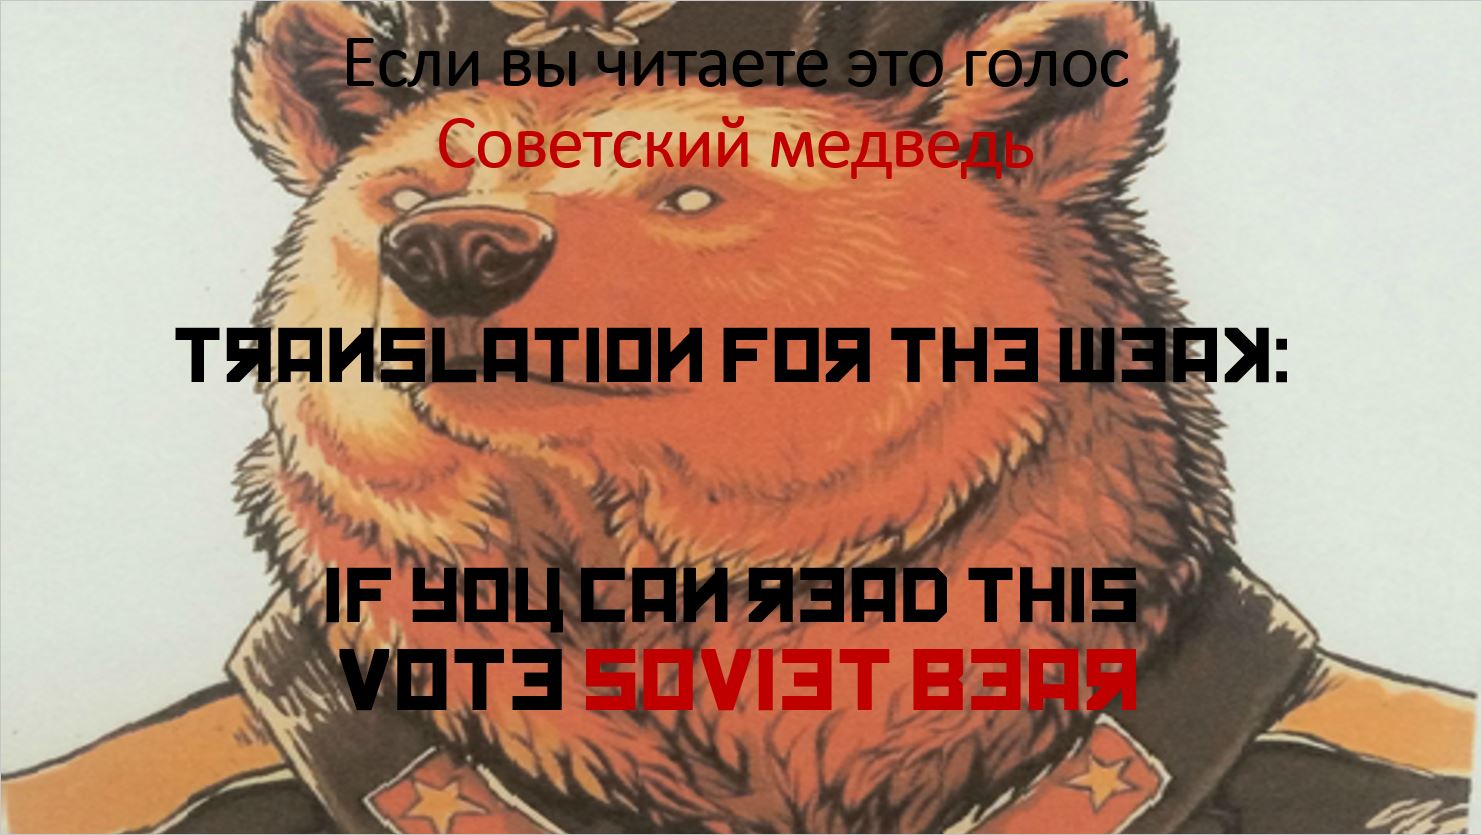 Soviet Bear 9